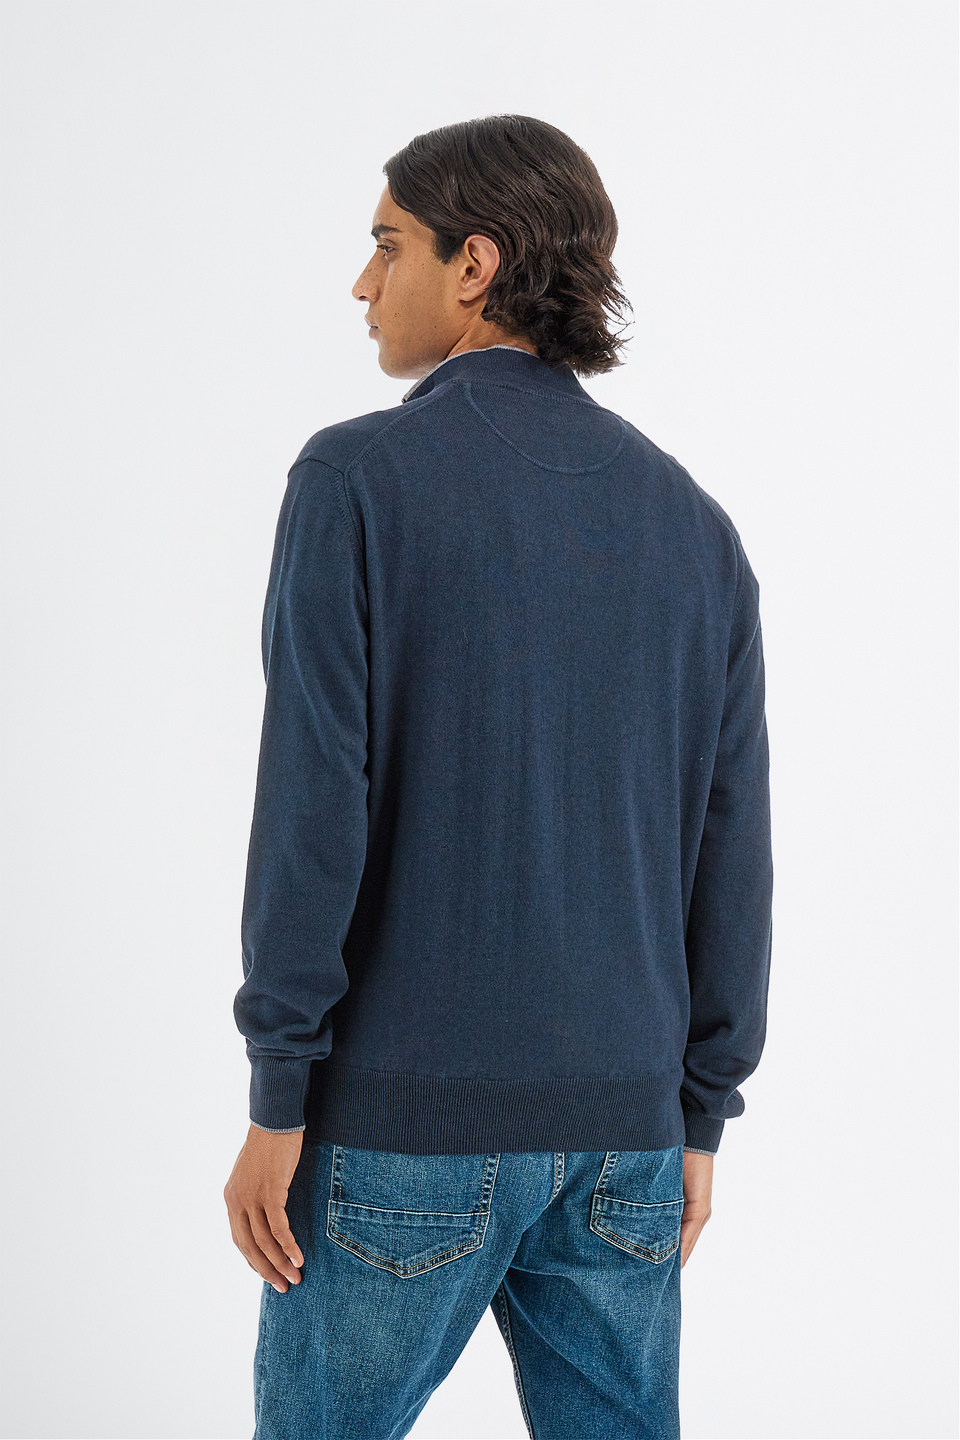 Jersey de punto para hombre de manga larga en mezcla de algodón regular fit con cuello de cremallera | La Martina - Official Online Shop